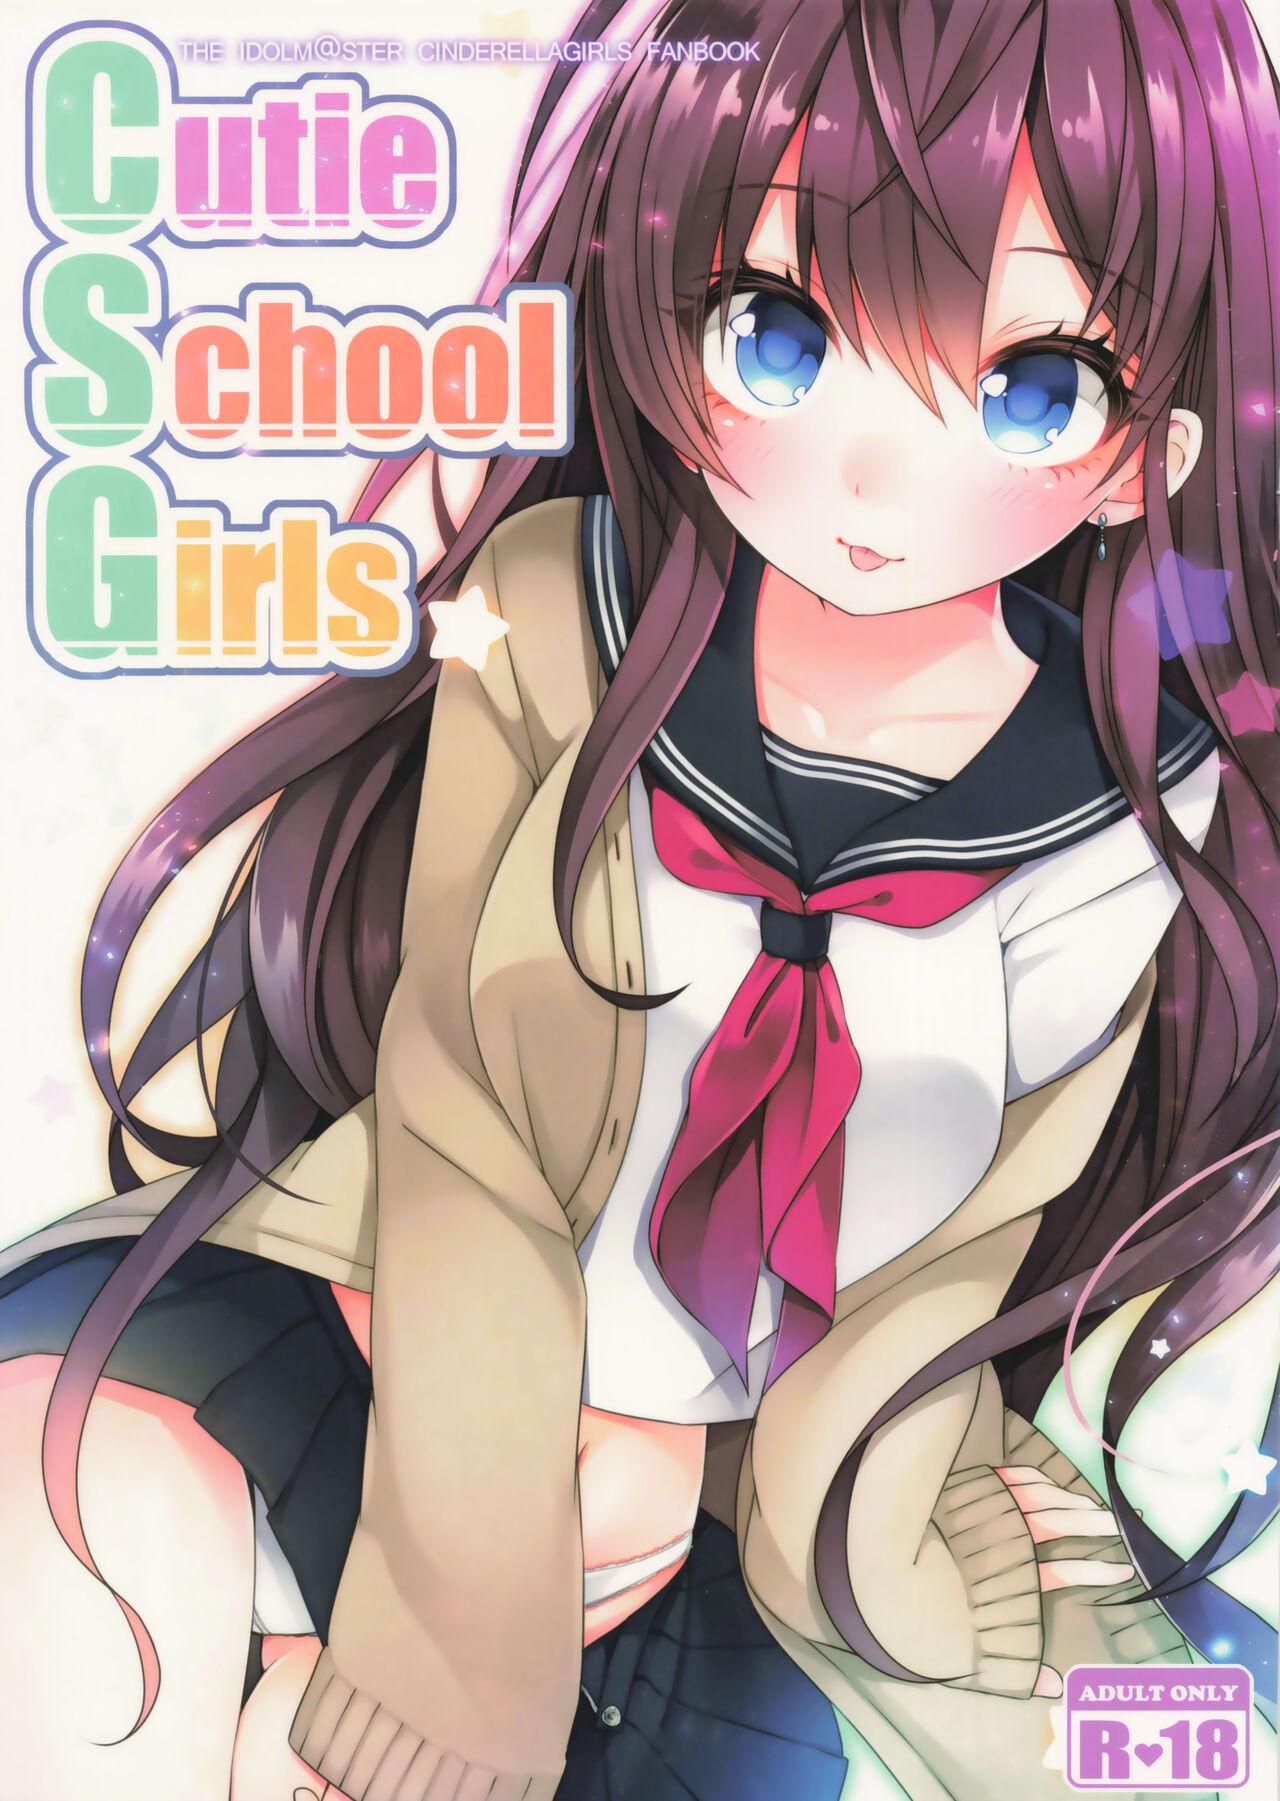 Cutie School Girls (シンデレラメモリーズ13) [でこぽんず (ささきち)] (アイドルマスター シンデレラガールズ) 0